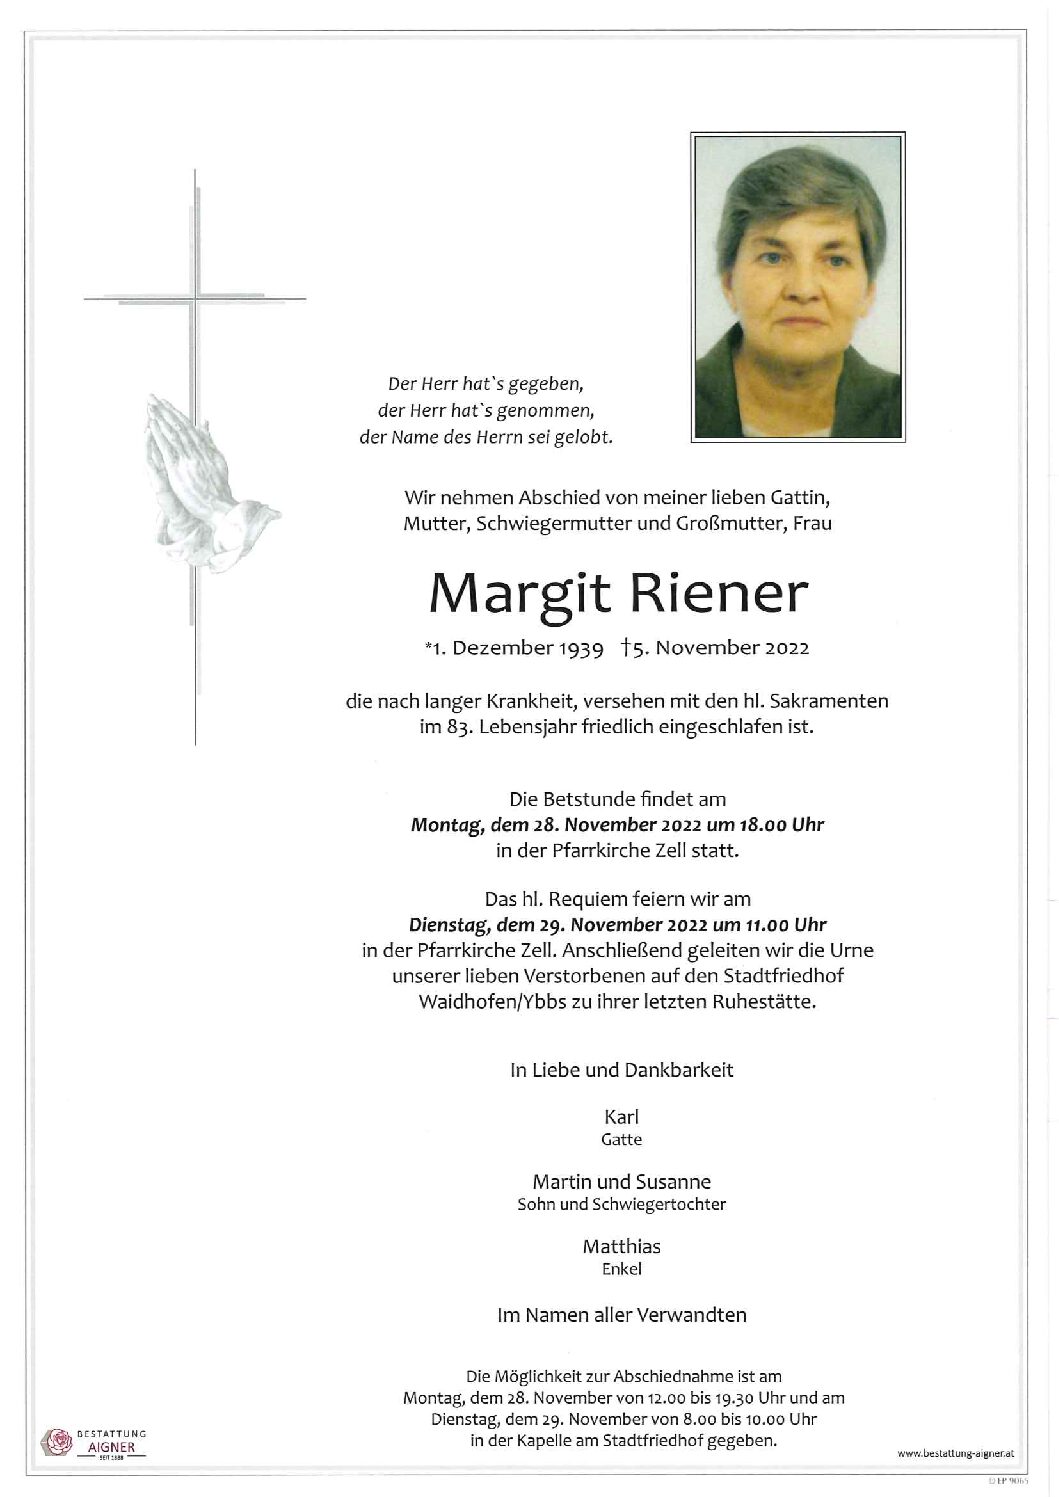 Margit Riener